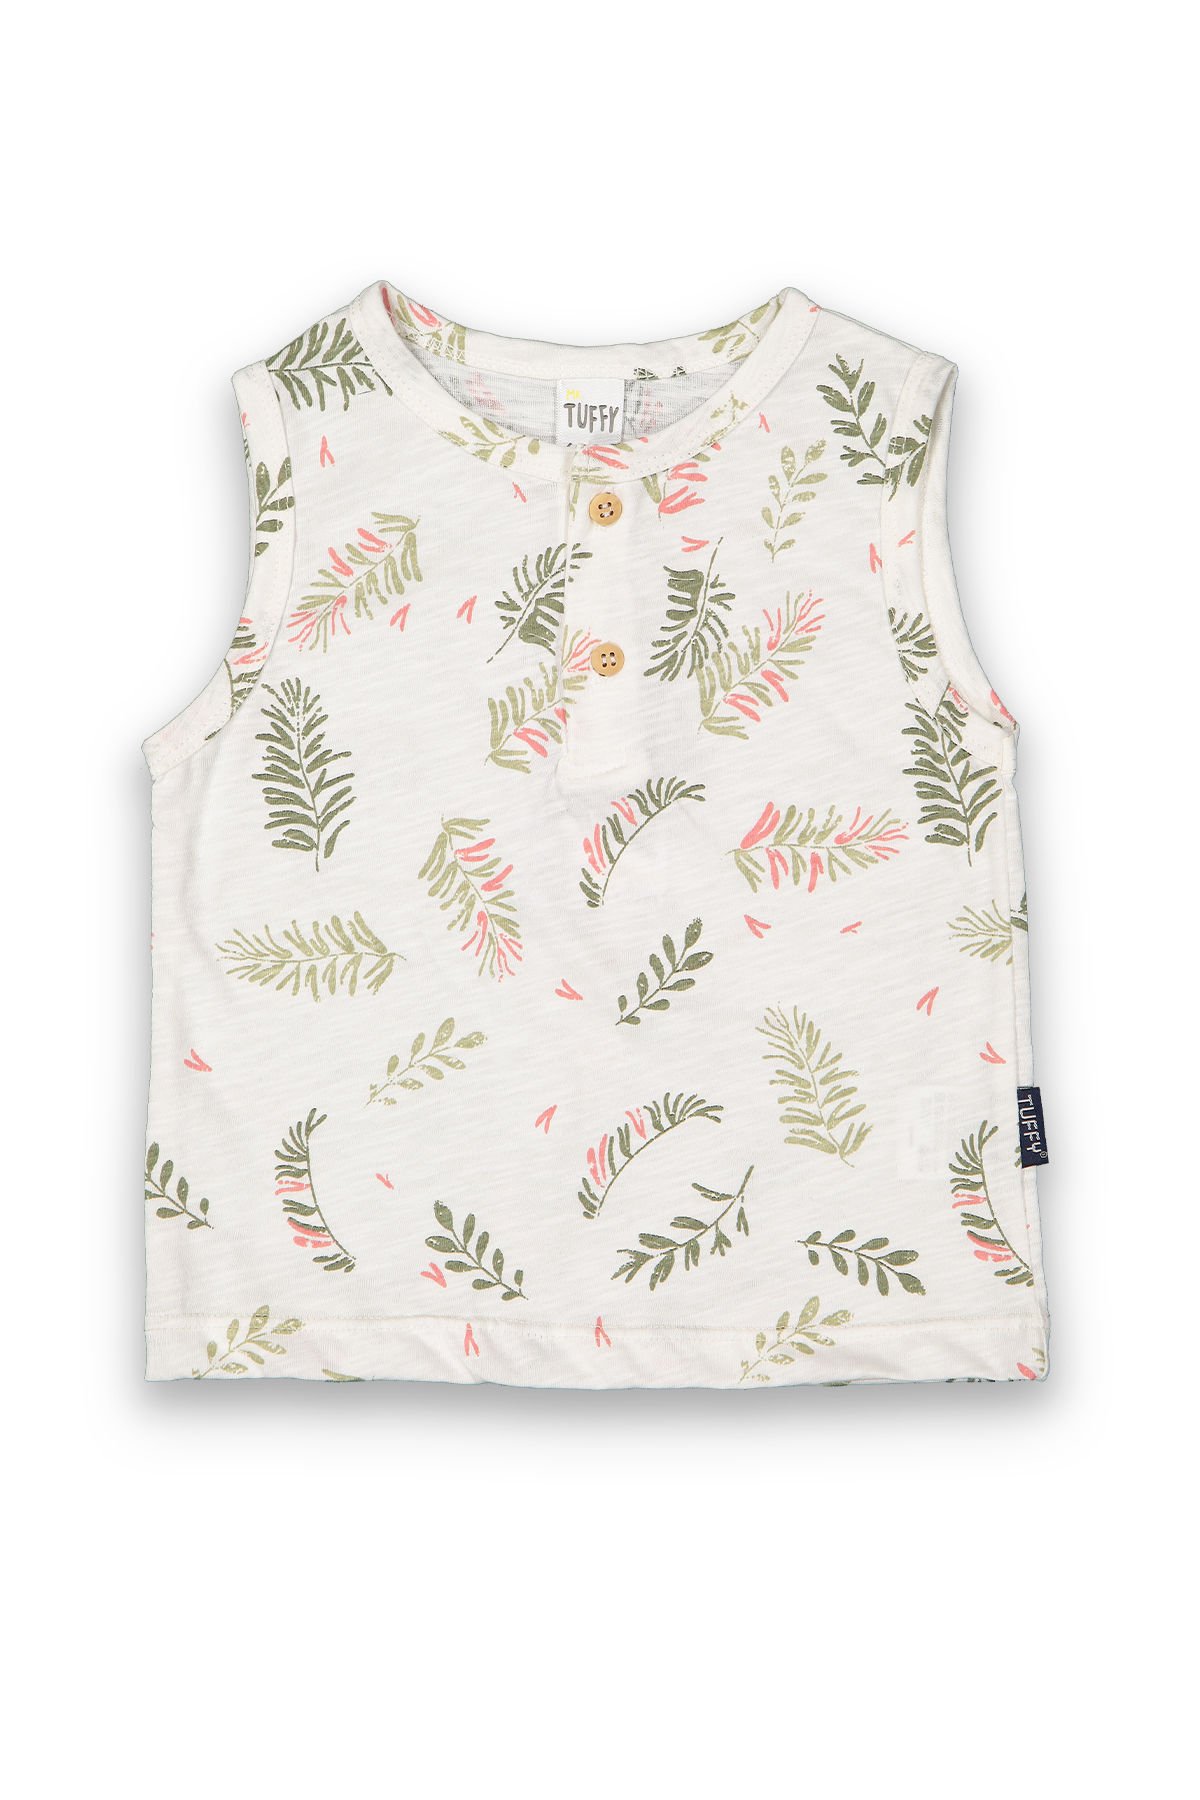 Tuffy Palmiye Detaylı Askılı Erkek Bebek T-Shirt-8030